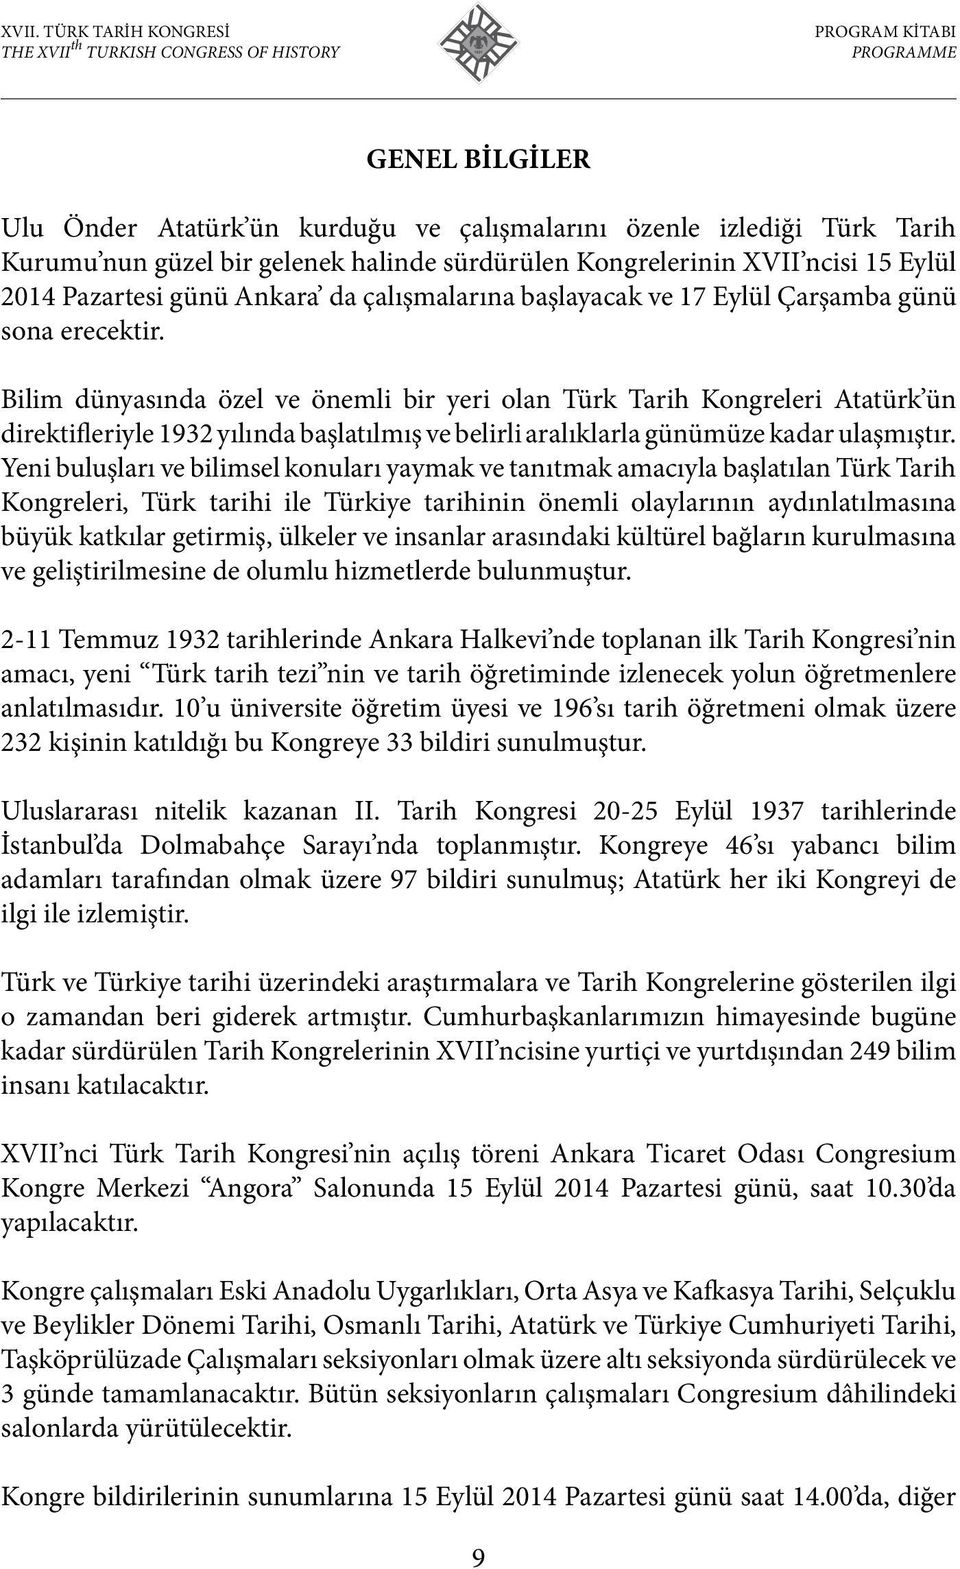 Bilim dünyasında özel ve önemli bir yeri olan Türk Tarih Kongreleri Atatürk ün direktifleriyle 1932 yılında başlatılmış ve belirli aralıklarla günümüze kadar ulaşmıştır.